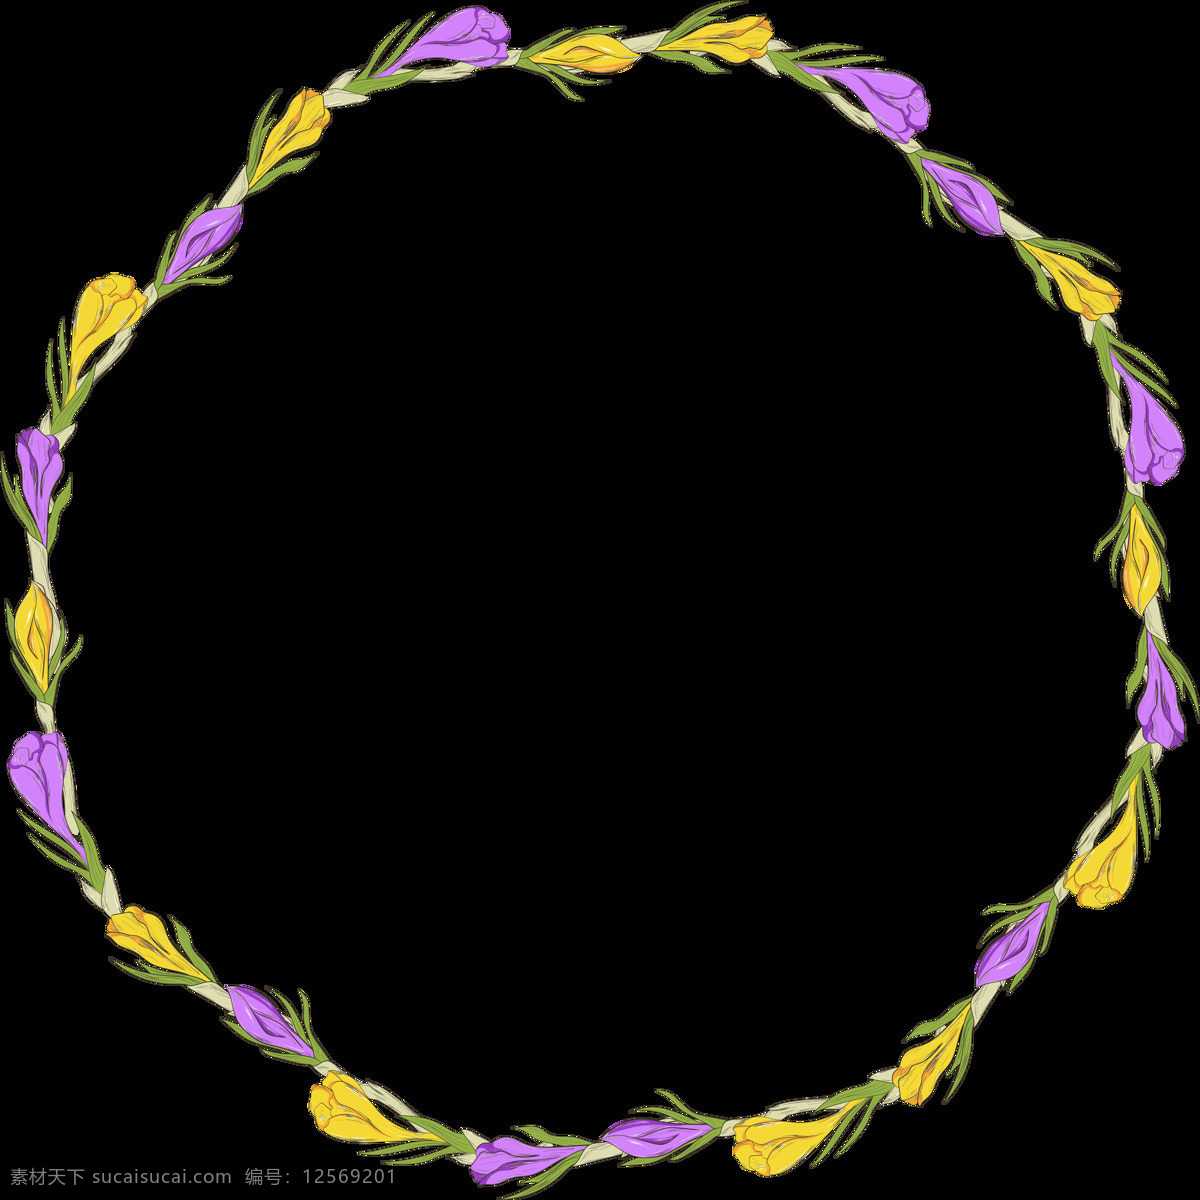 紫 黄花 朵 双色 花环 透明 花朵 花藤 花枝 黄色 平面素材 设计素材 矢量素材 紫色